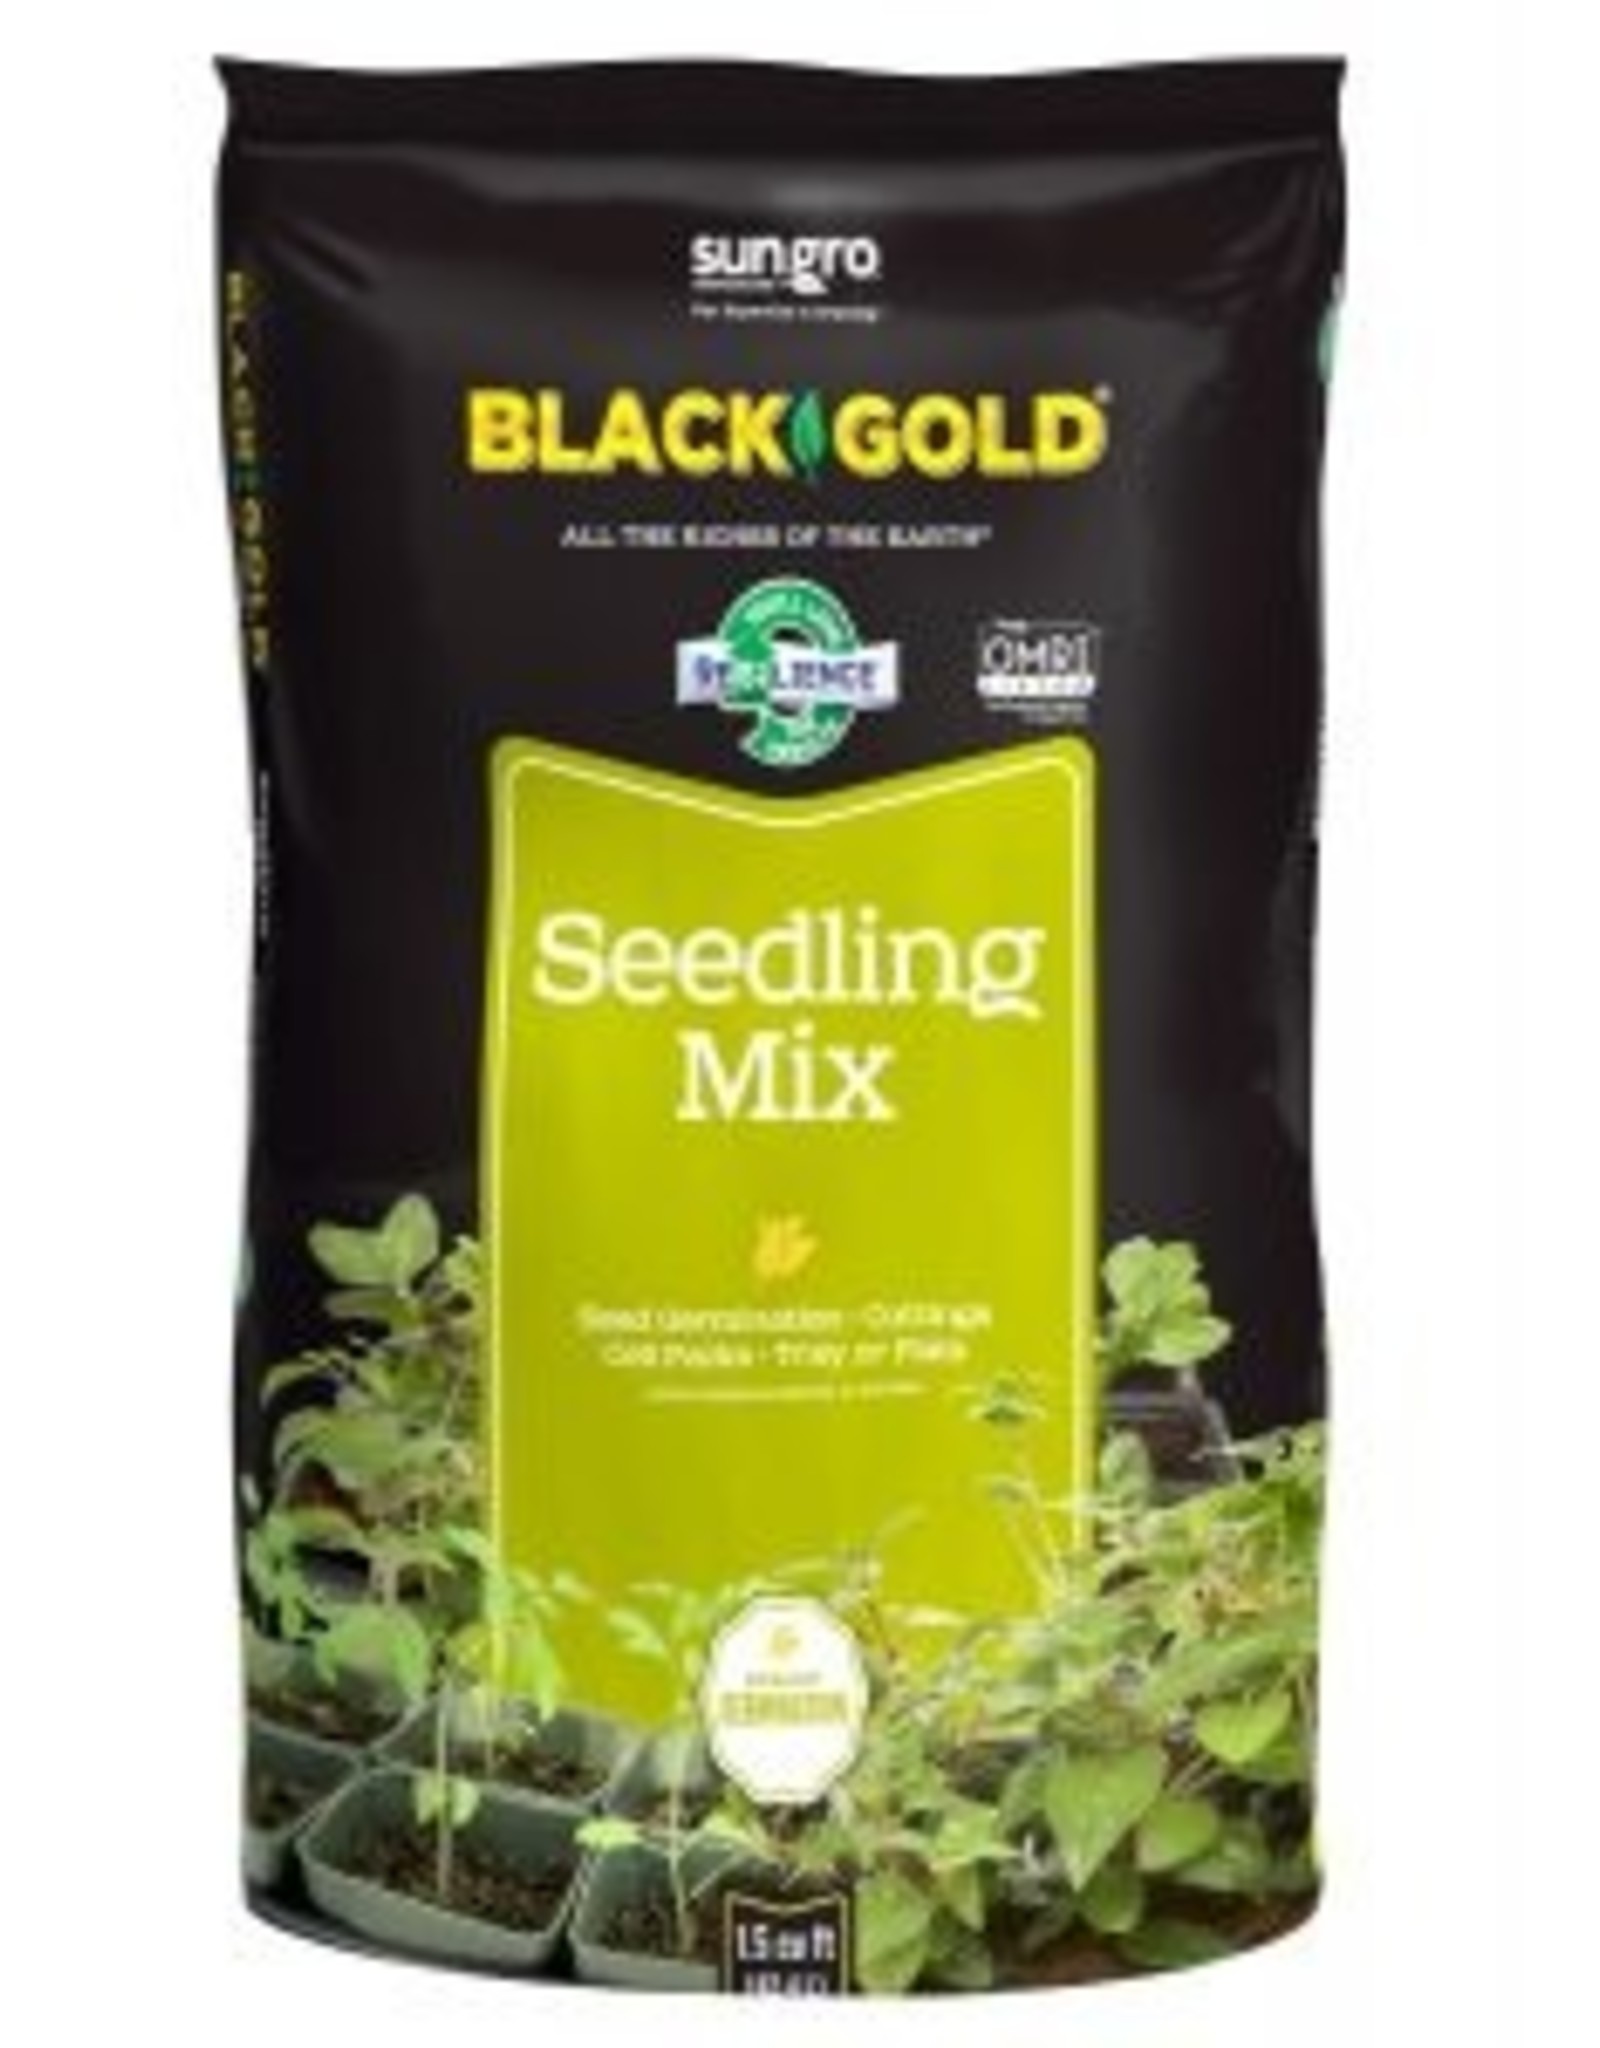 Seedling mix, Black Gold - 8 qt